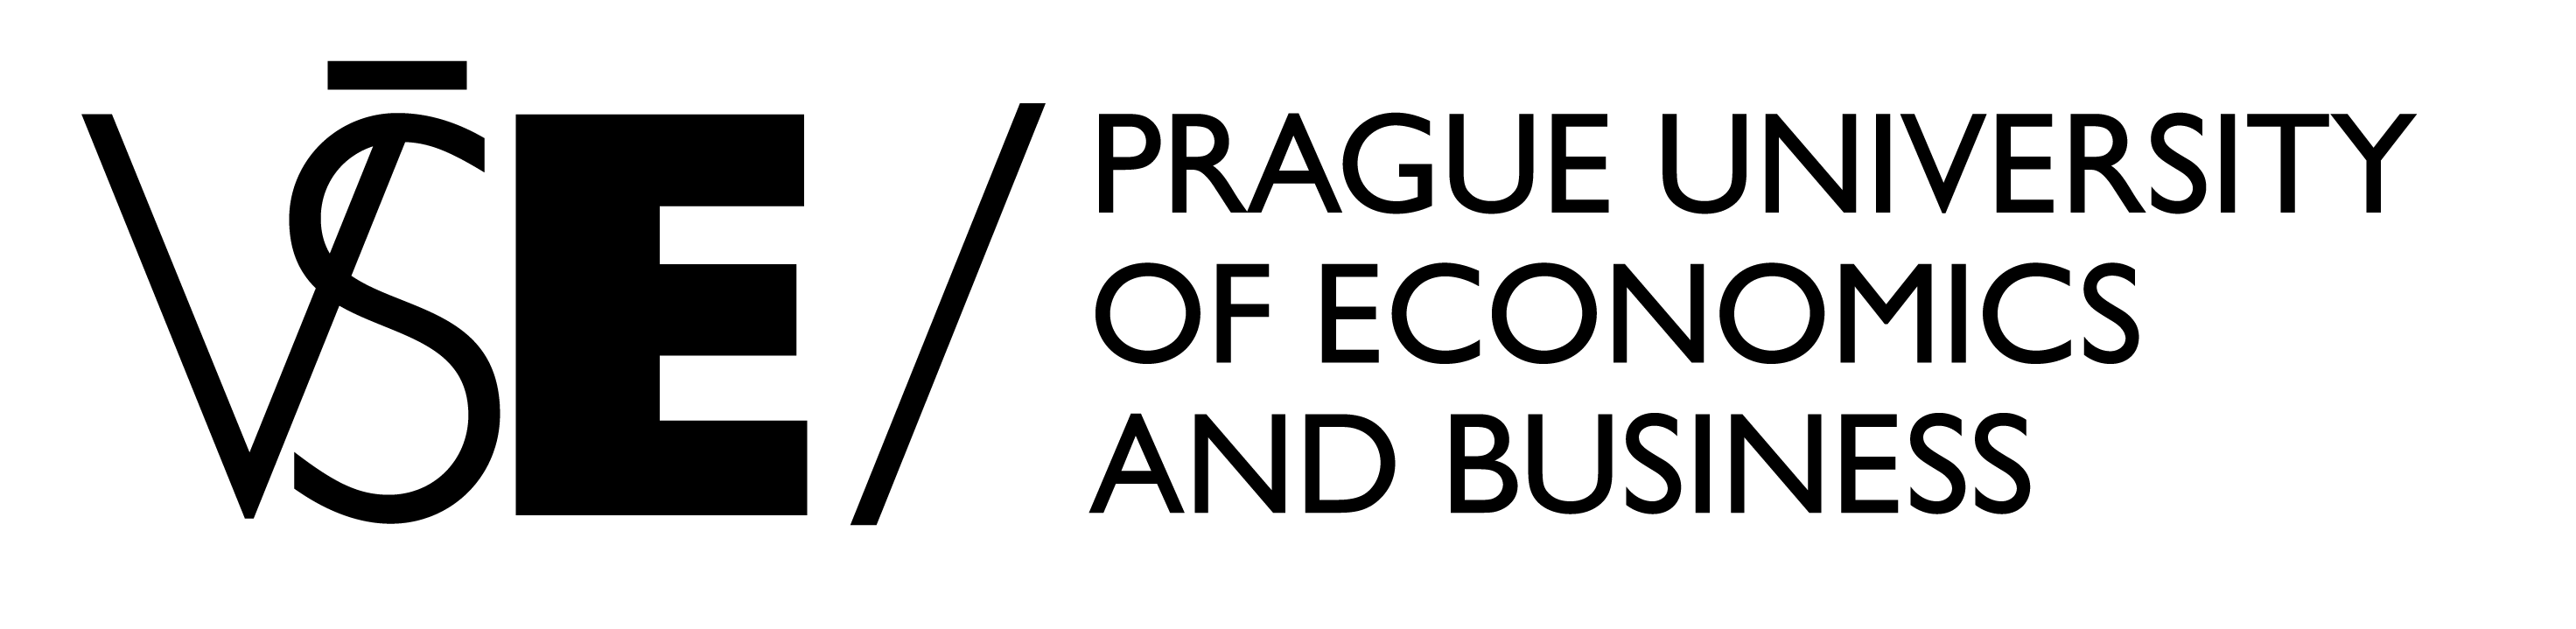 VŠE - logo black - horizontal - English